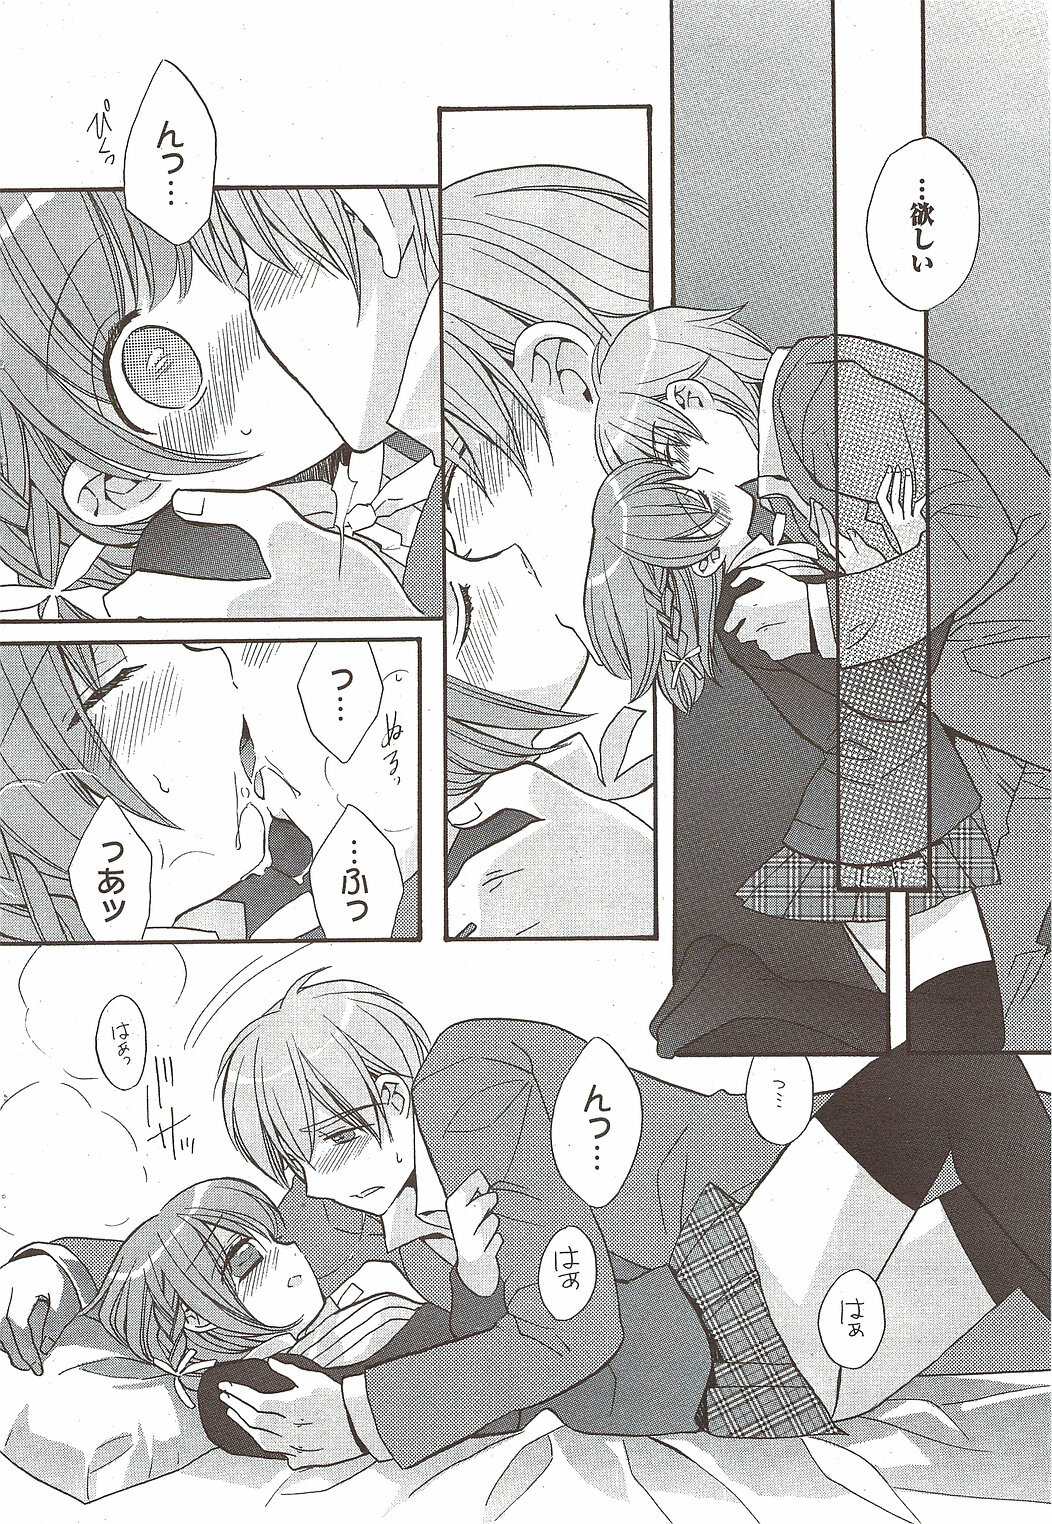 Manga Bangaichi 2010-01 page 50 full